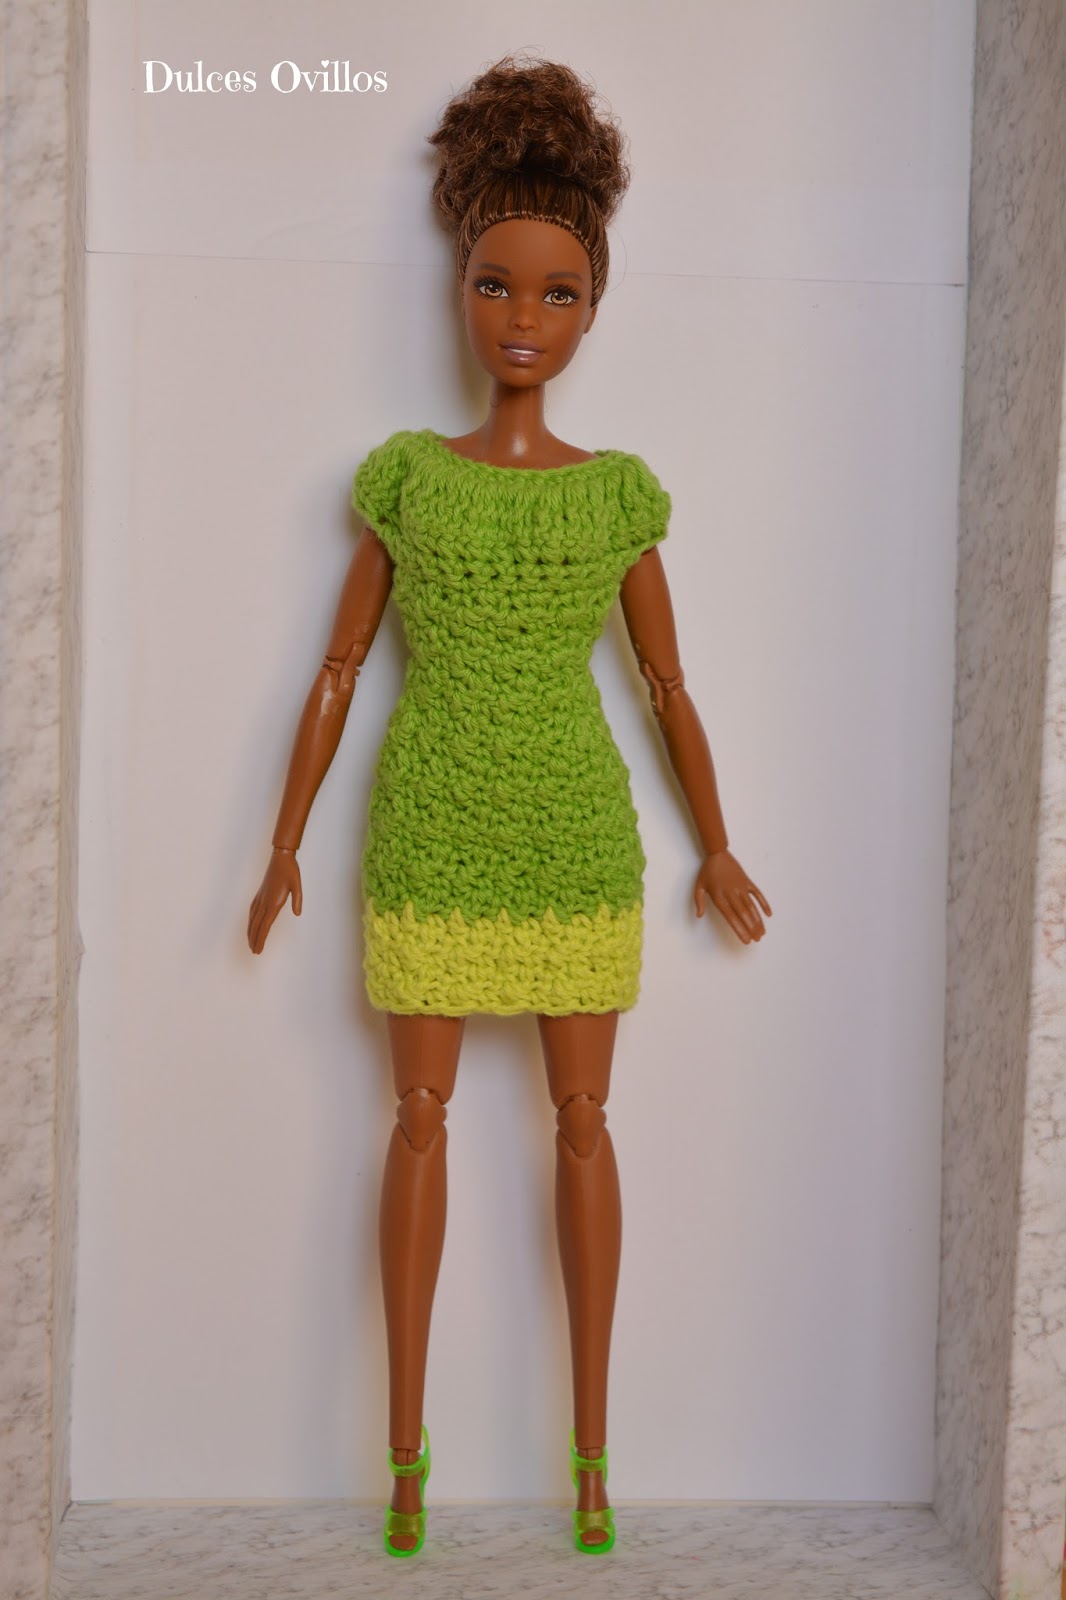 Dulces Ovillos: Vestido a crochet para Barbie - Crochet dress for Barbie  Made to Move